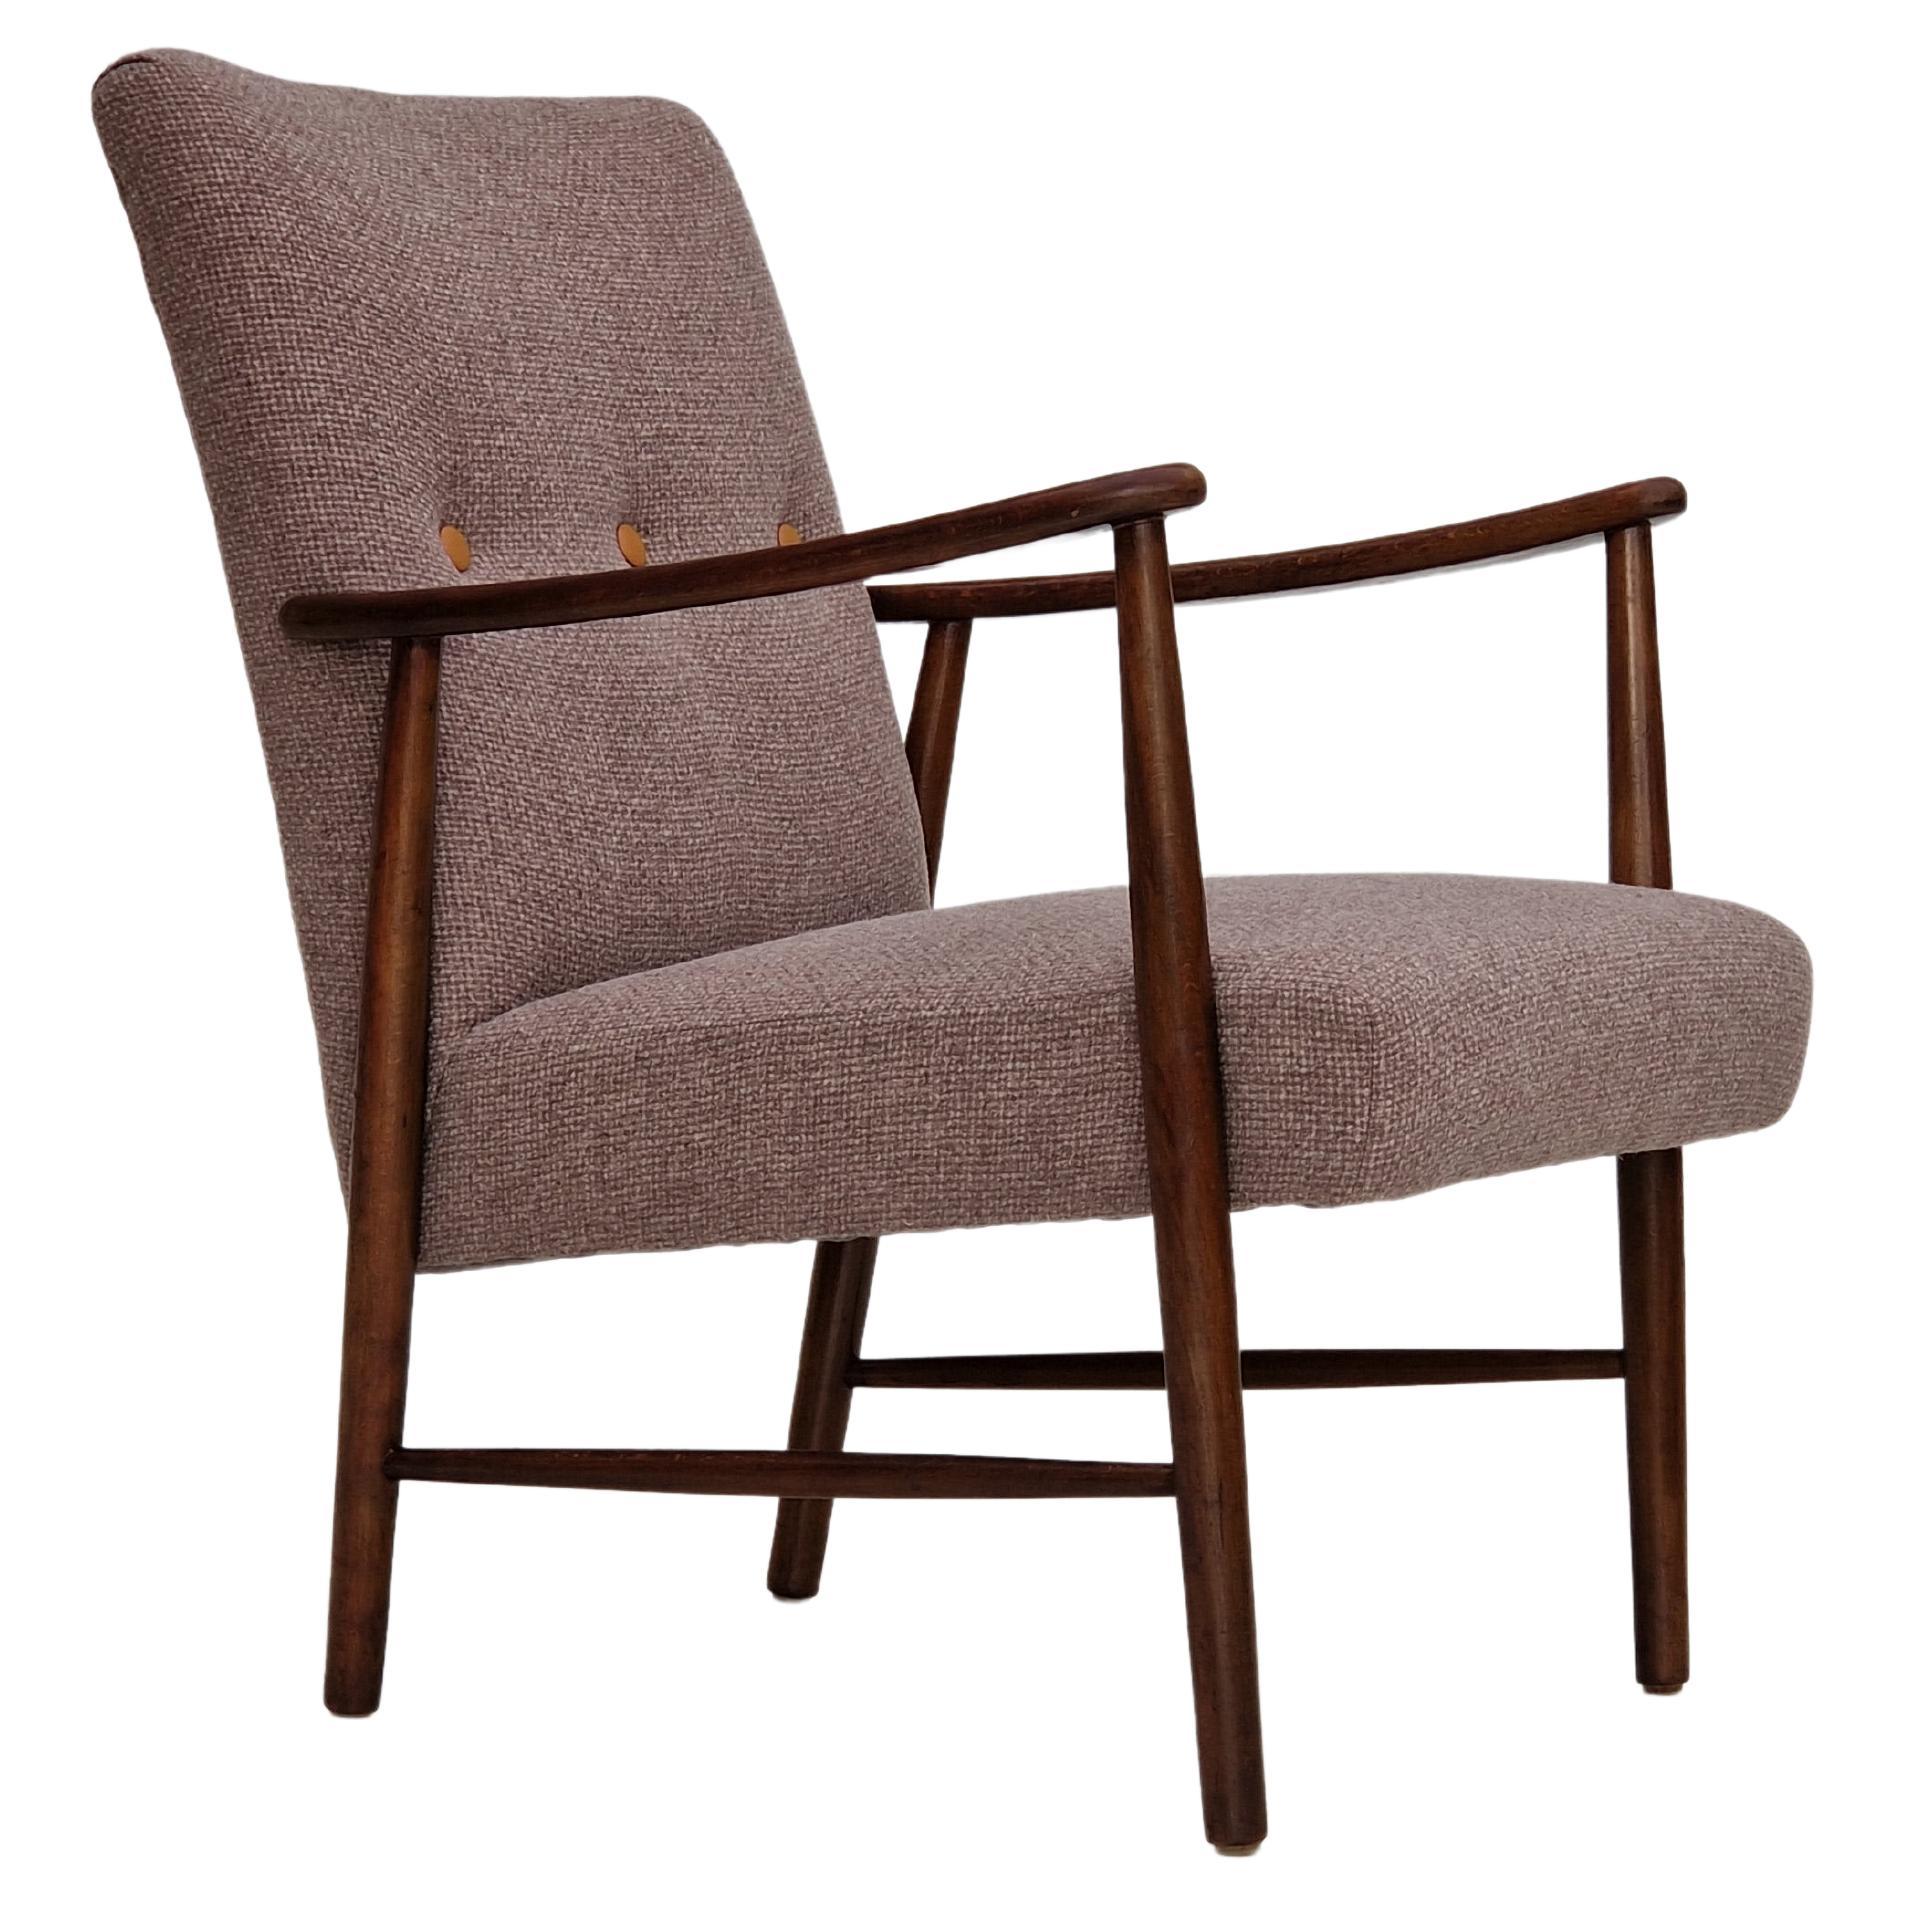 60s, design suédois, fauteuil remis à neuf, laine de mobilier.